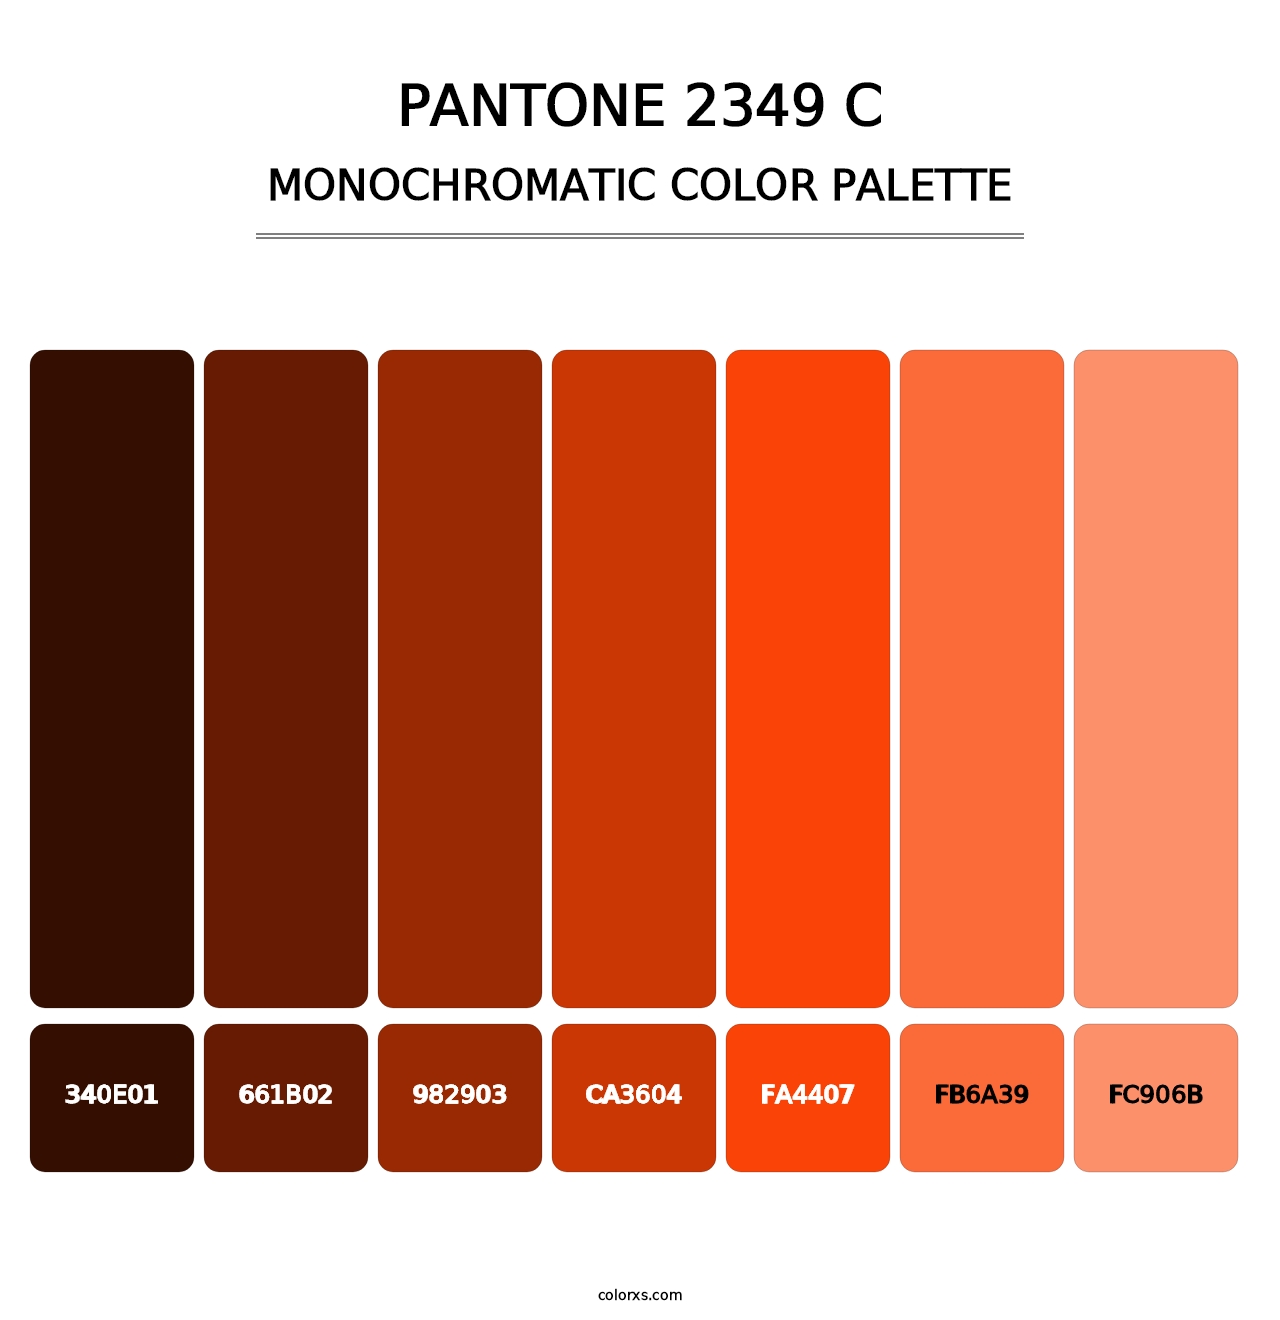 PANTONE 2349 C - Monochromatic Color Palette